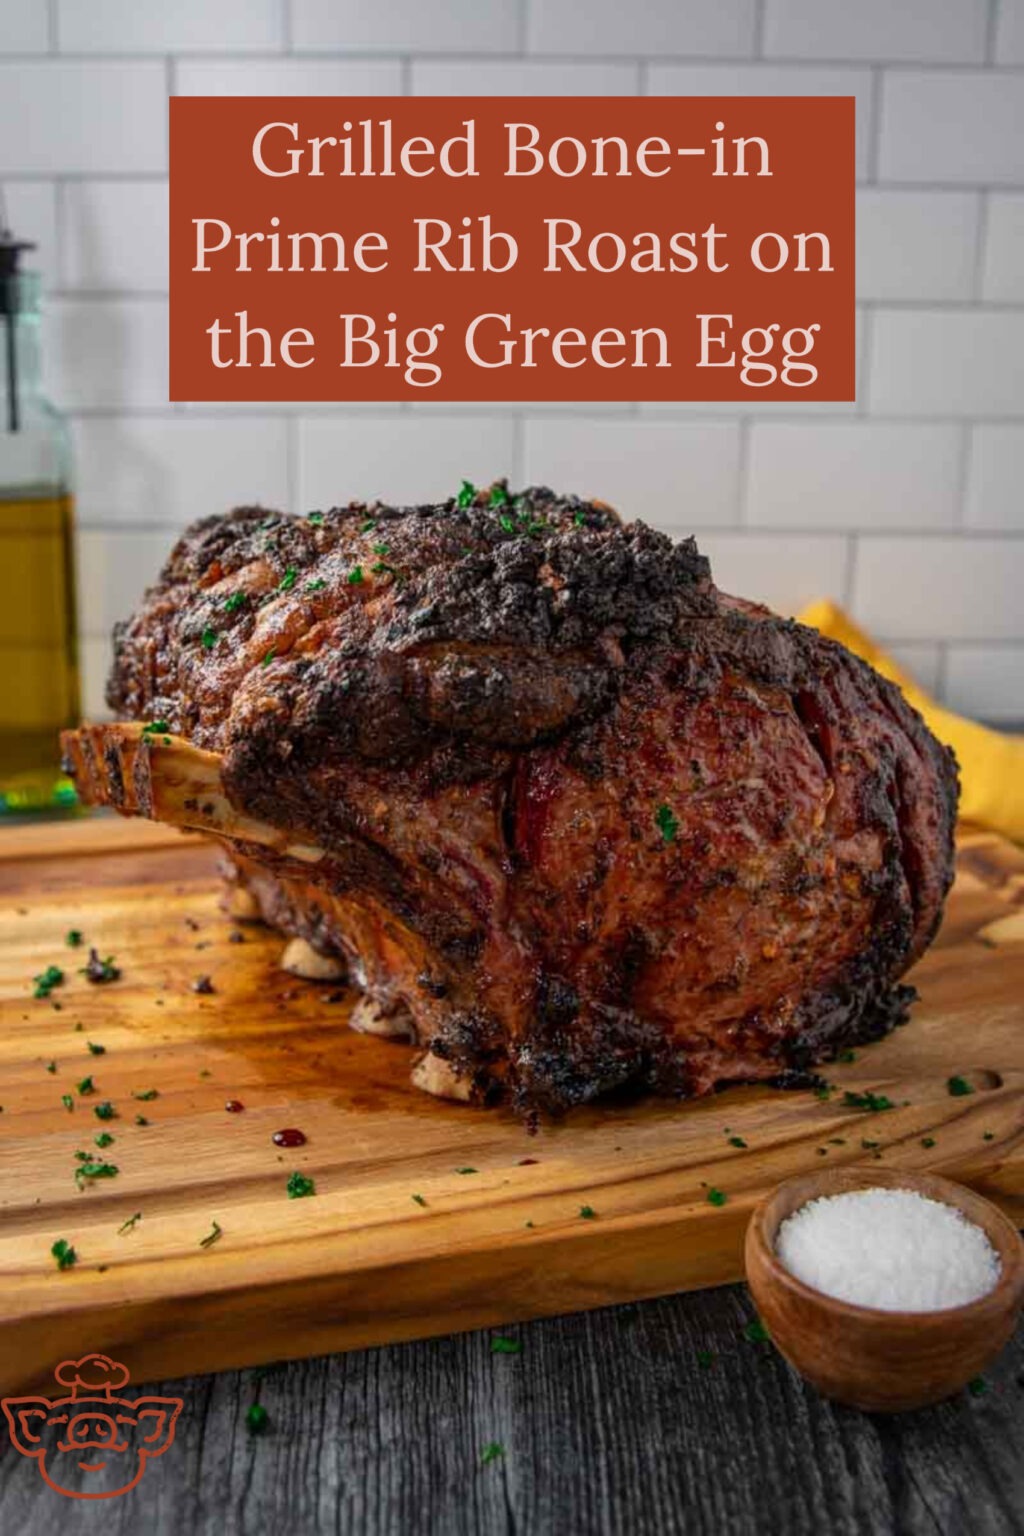 Grilled Bone in Prime Rib Roast on the Big Green Egg - The BBQ Buddha